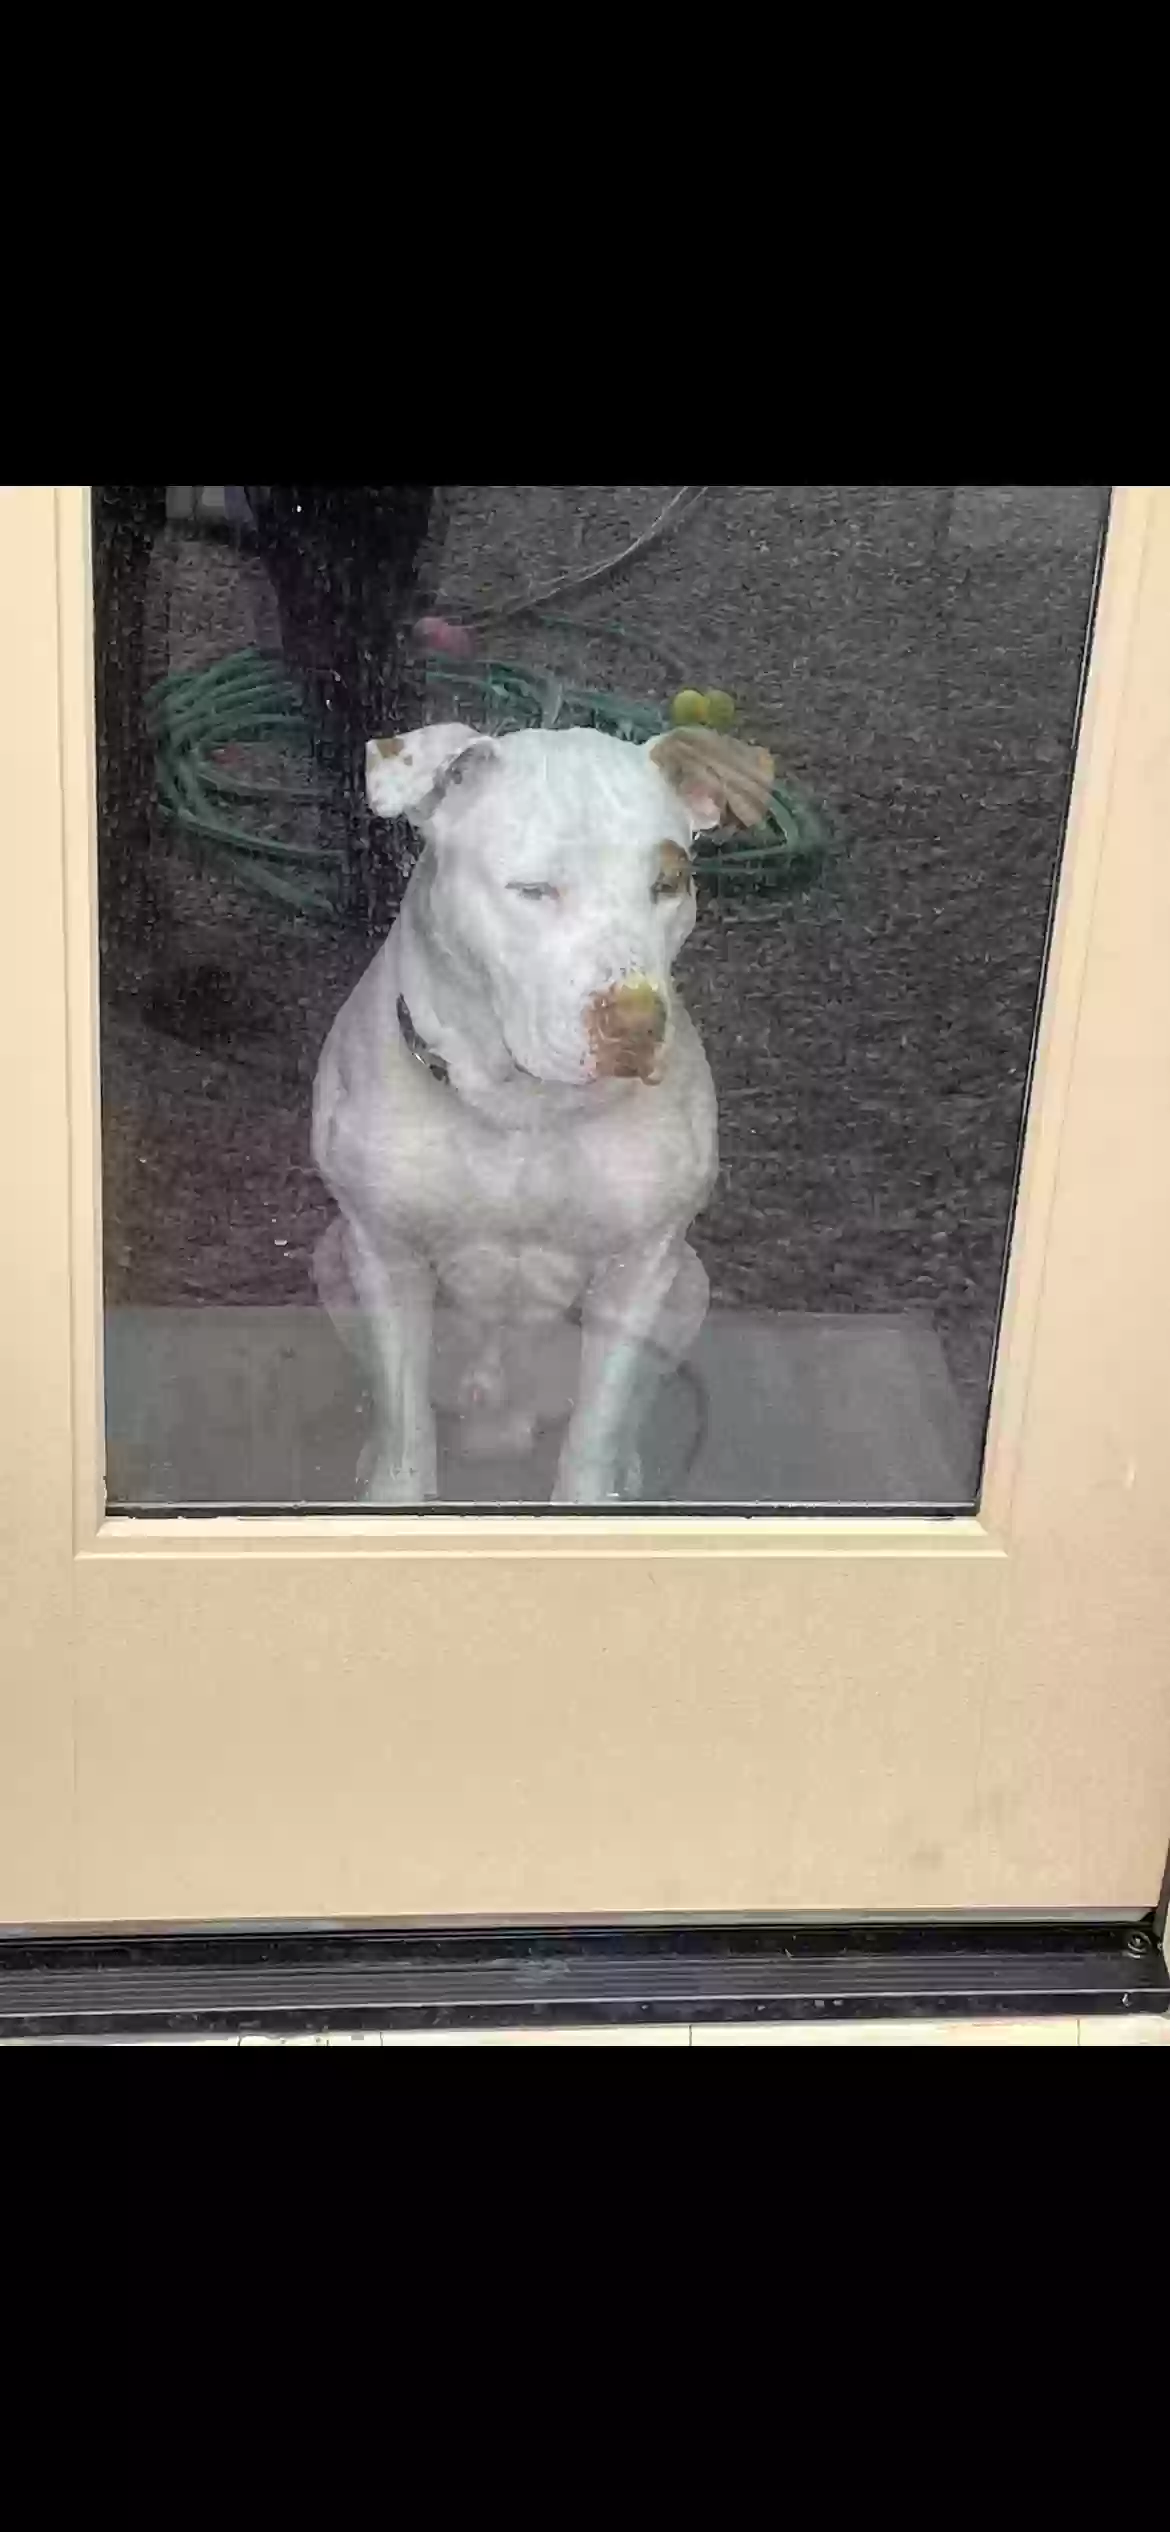 adoptable Dog in Casa Grande,AZ named Bane